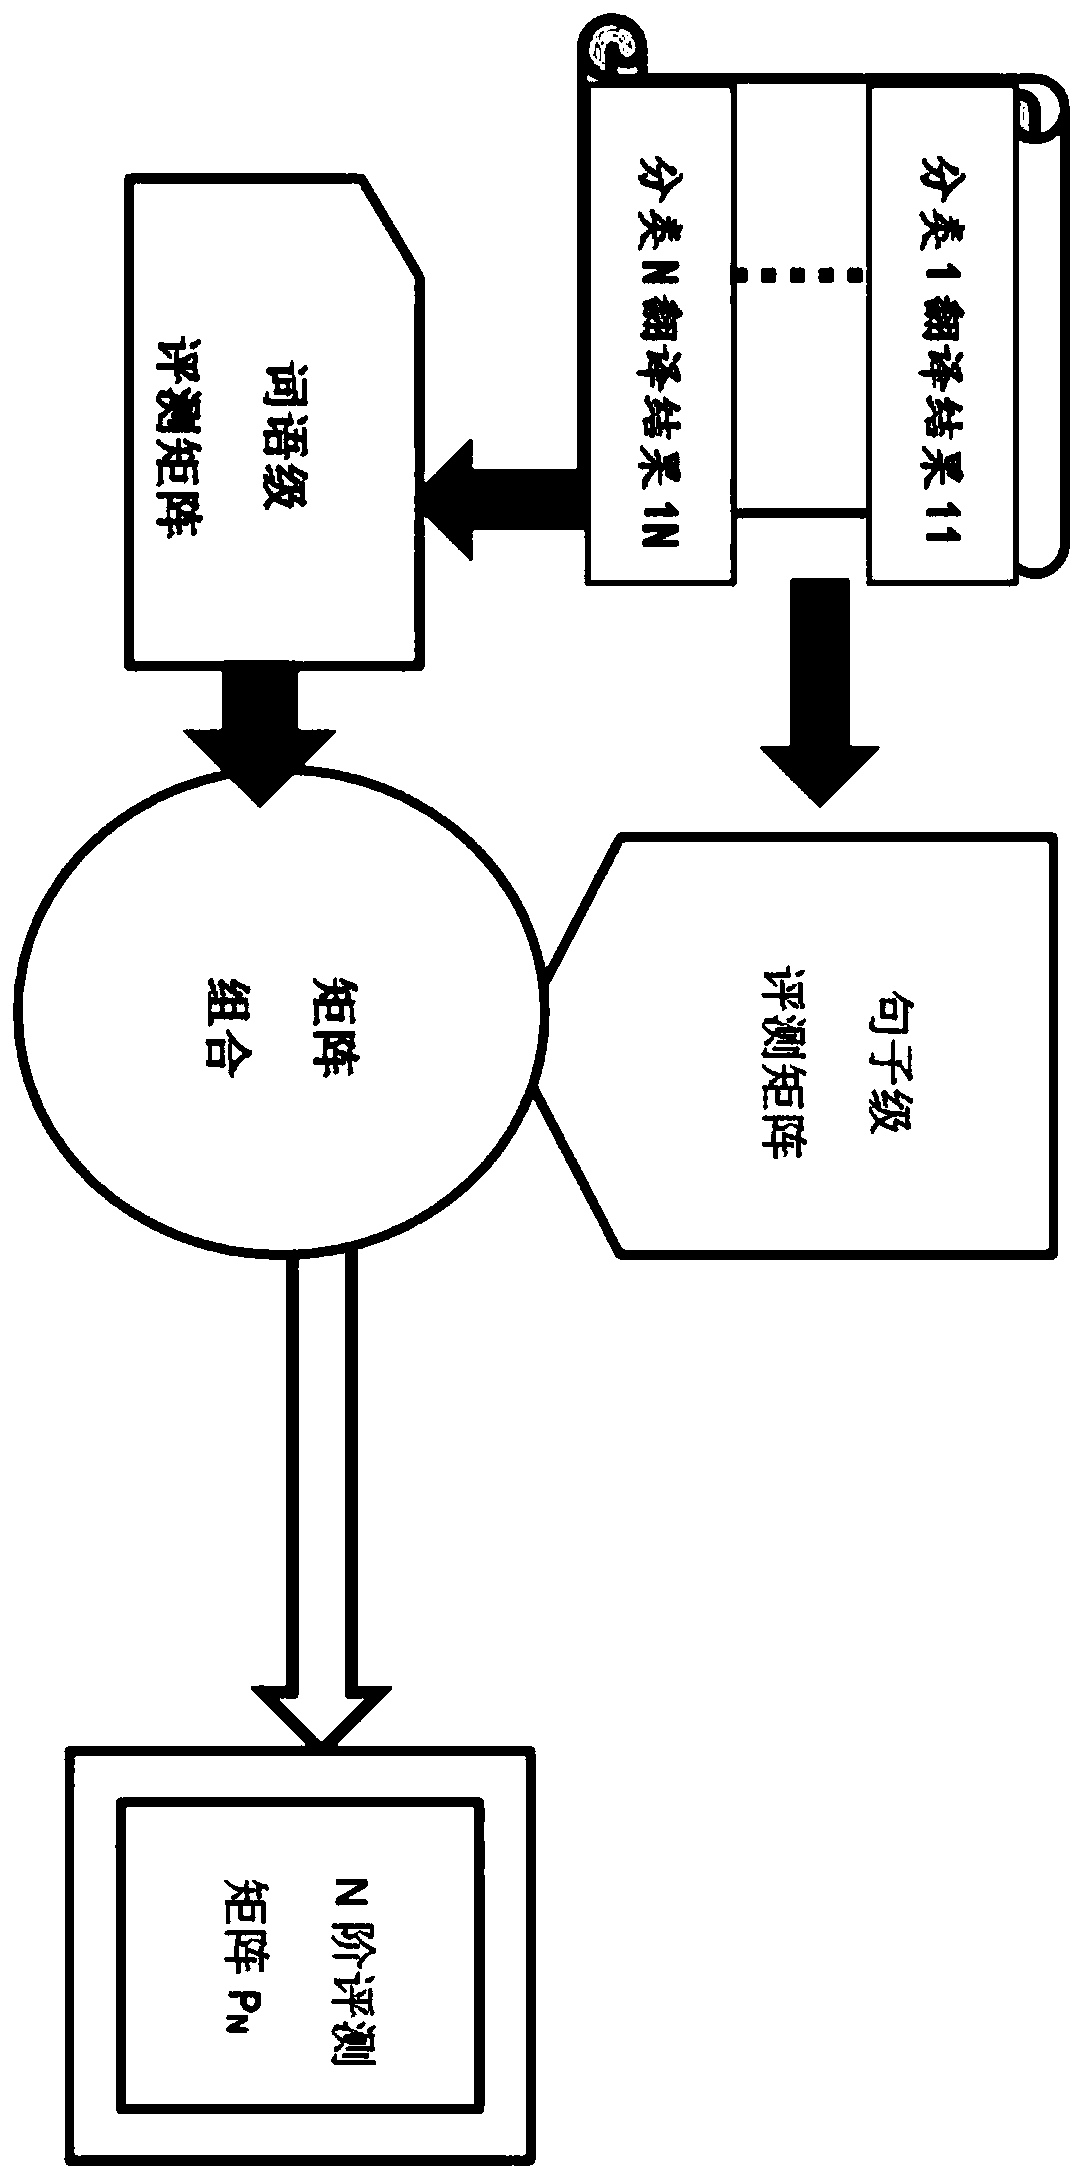 Translation matrix model selection system based on OpenKiWi